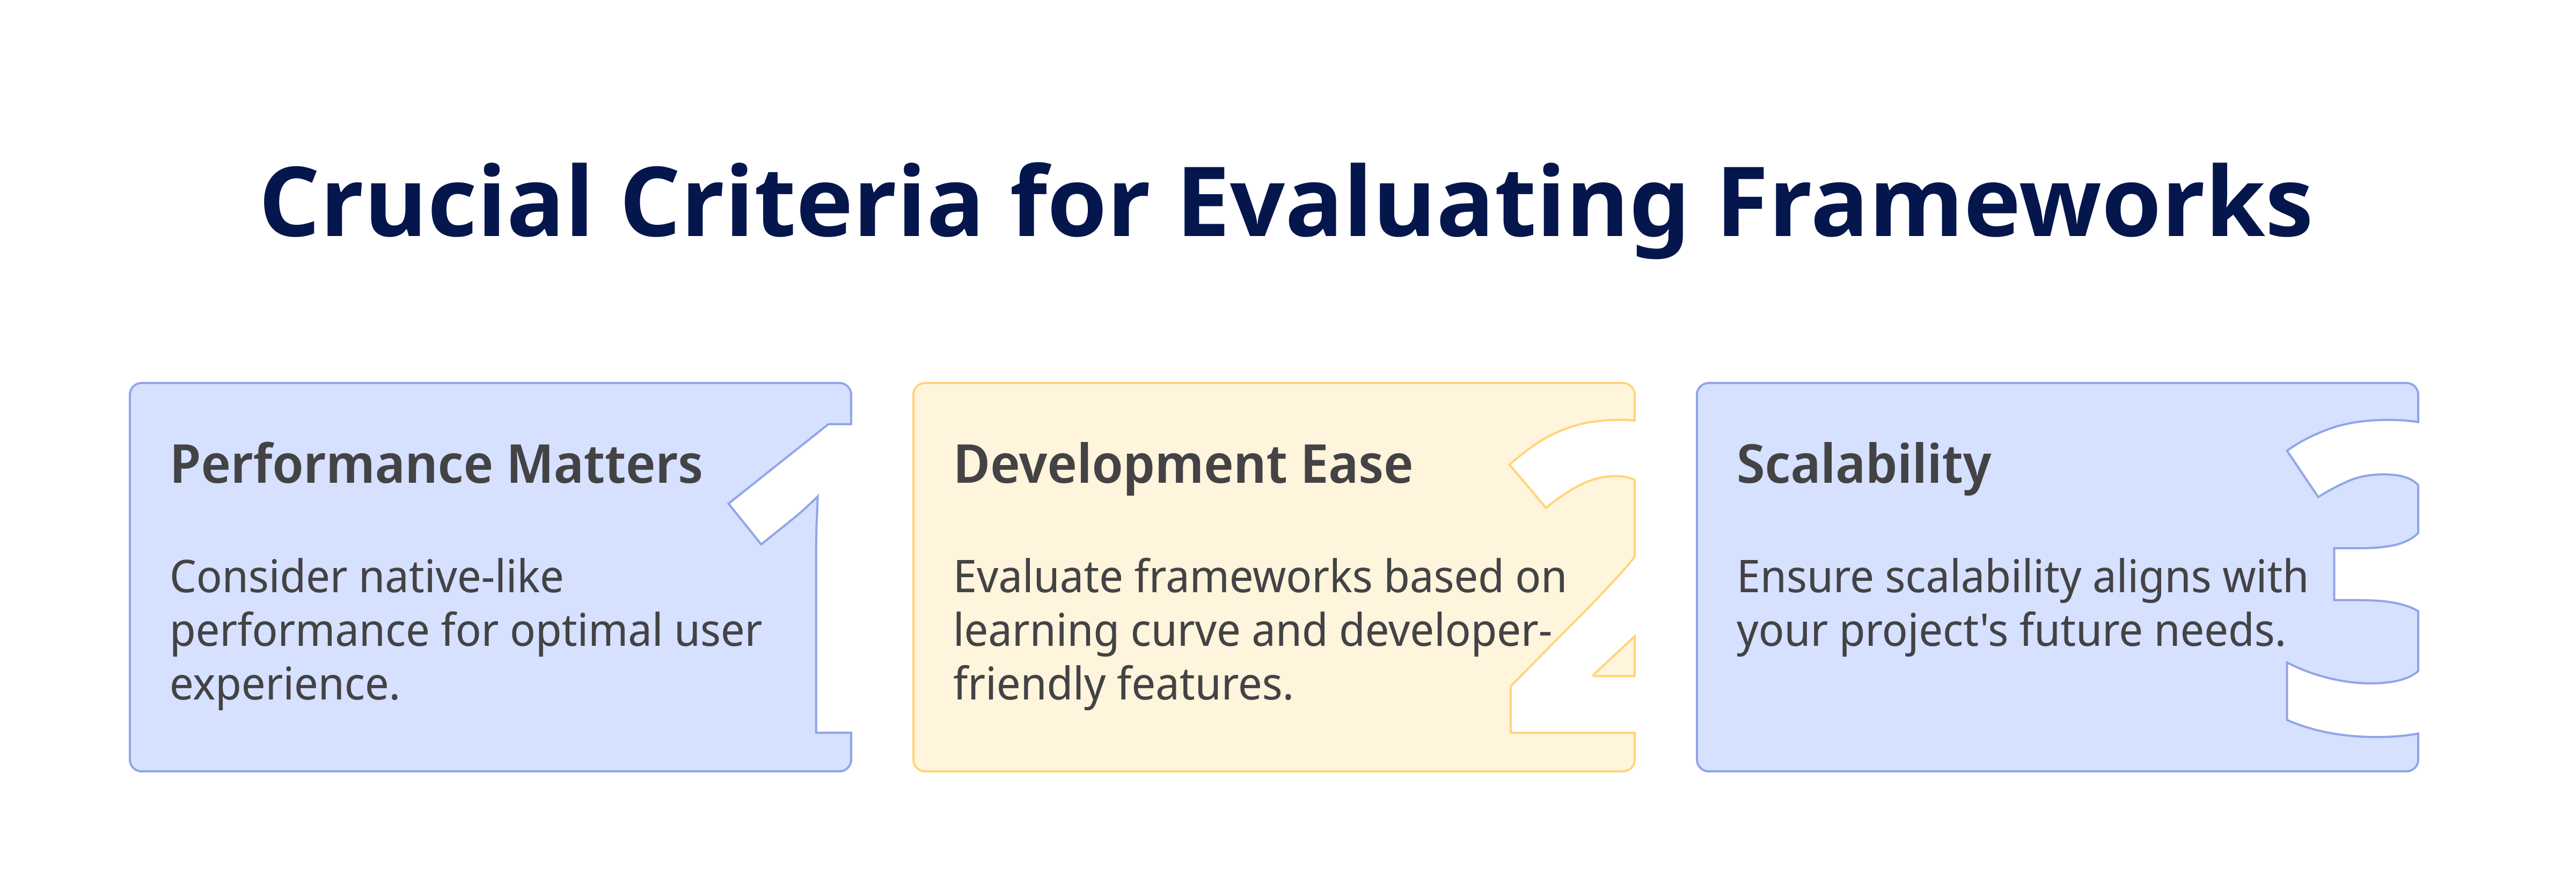 Crucial Criteria for Evaluating Frameworks